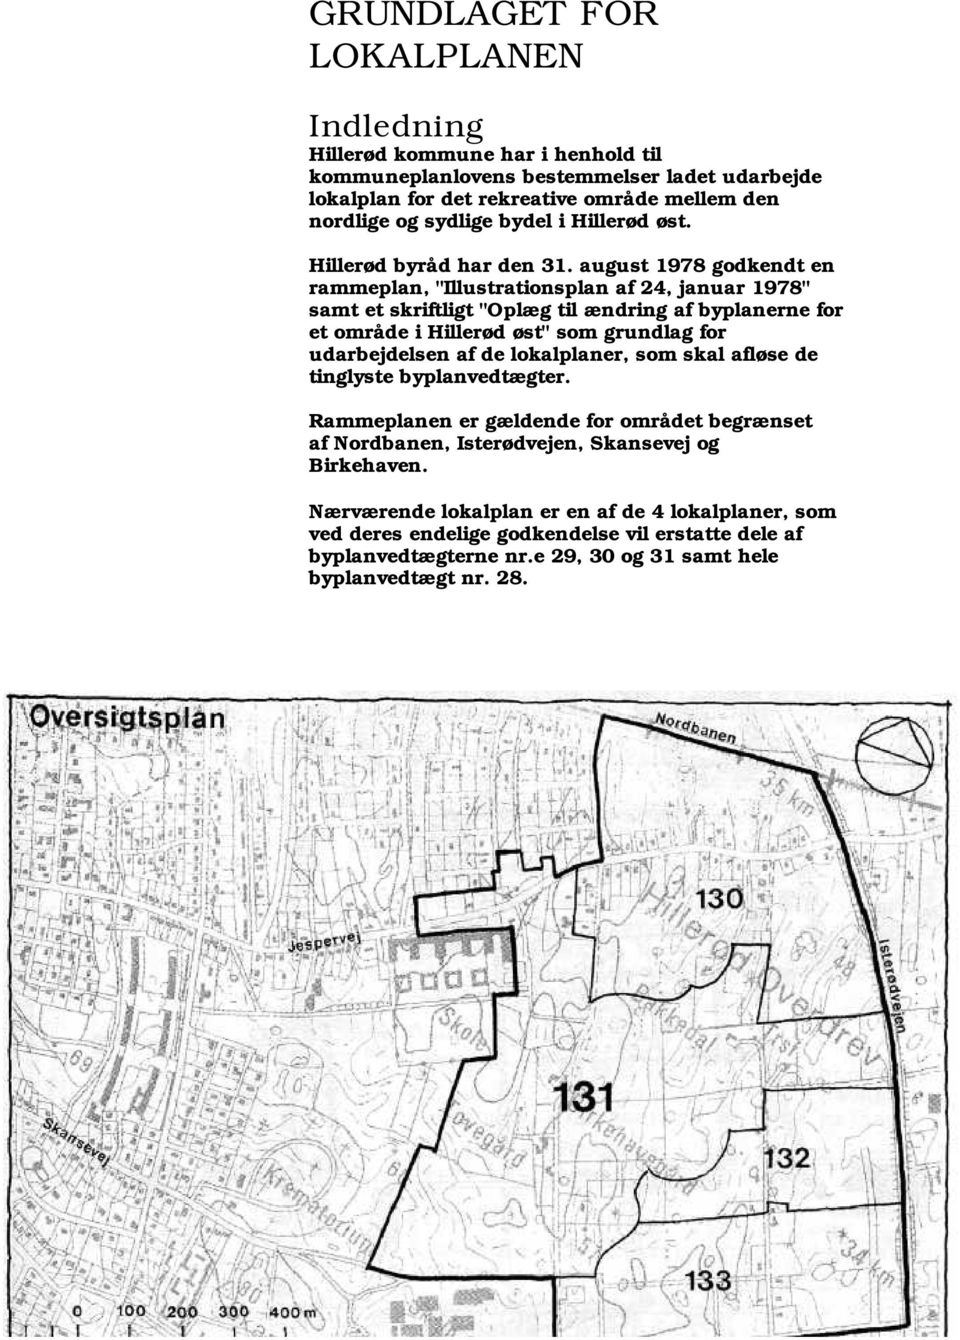 august 1978 godkendt en rammeplan, "Illustrationsplan af 24, januar 1978" samt et skriftligt "Oplæg til ændring af byplanerne for et område i Hillerød øst" som grundlag for udarbejdelsen af